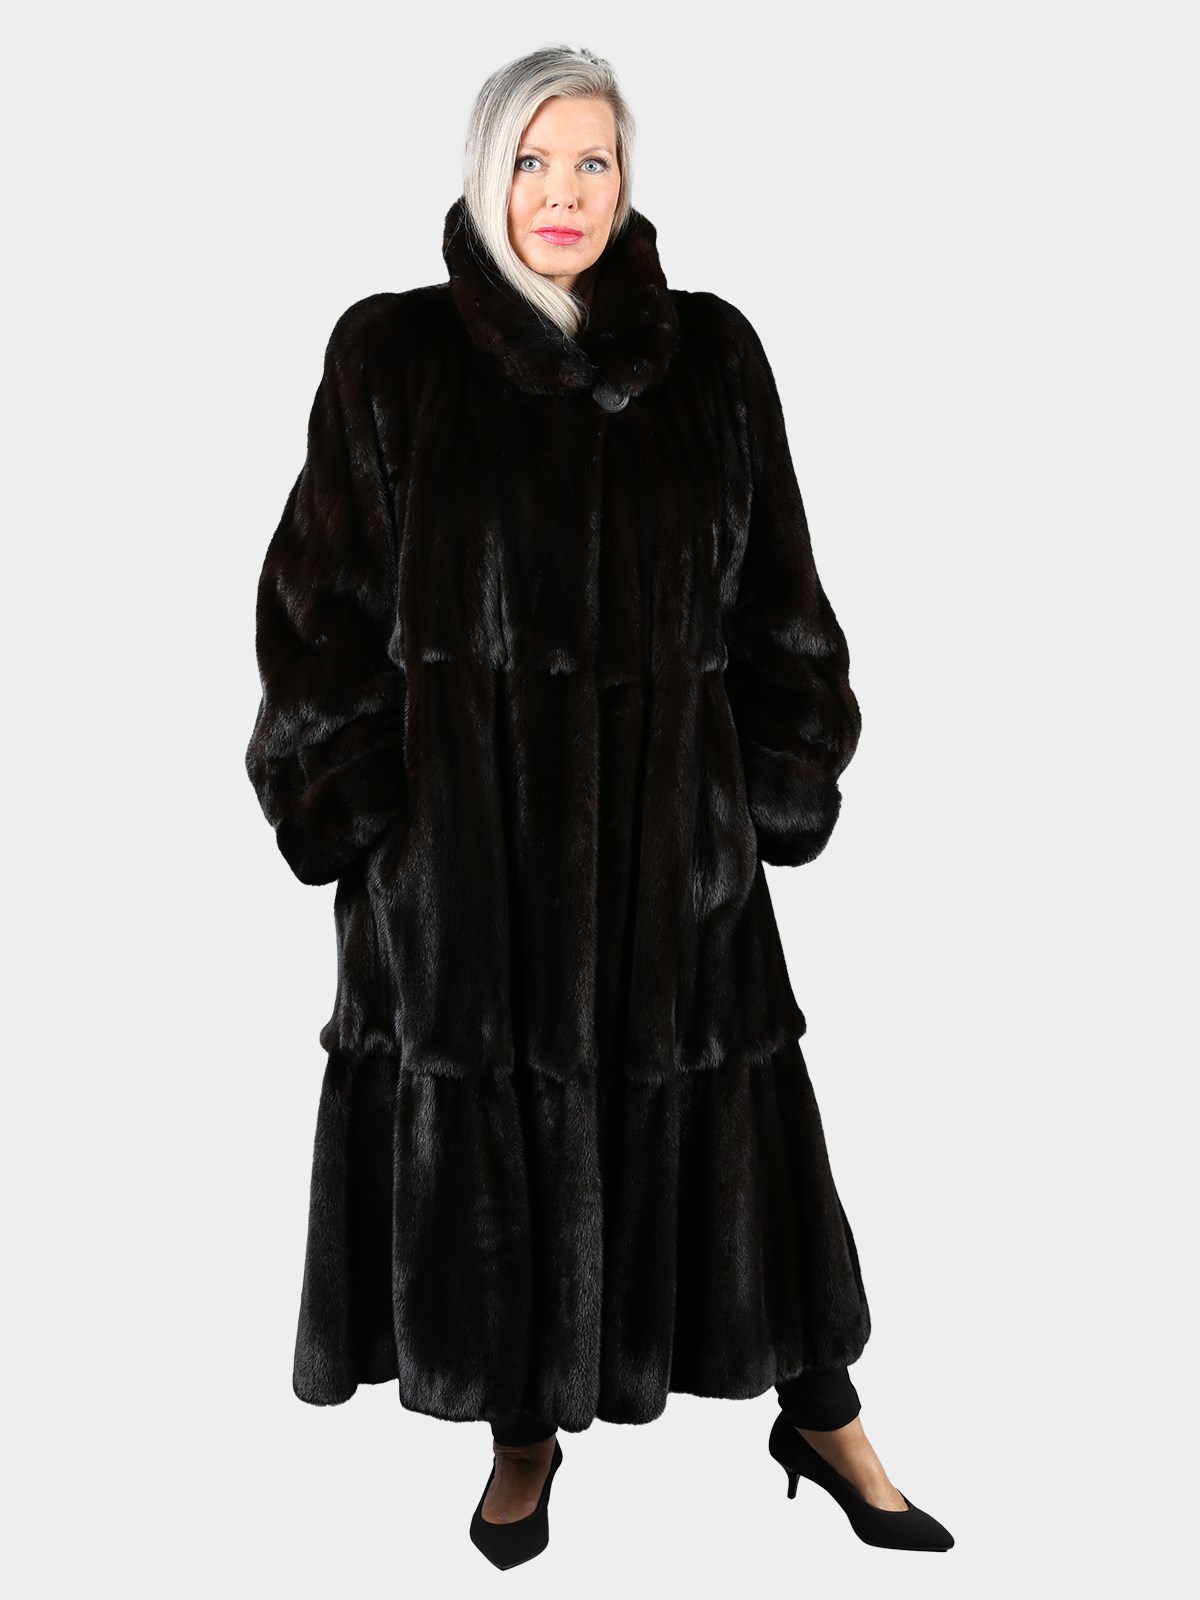 Woman's Natural Red Fur Coat - Estate Furs